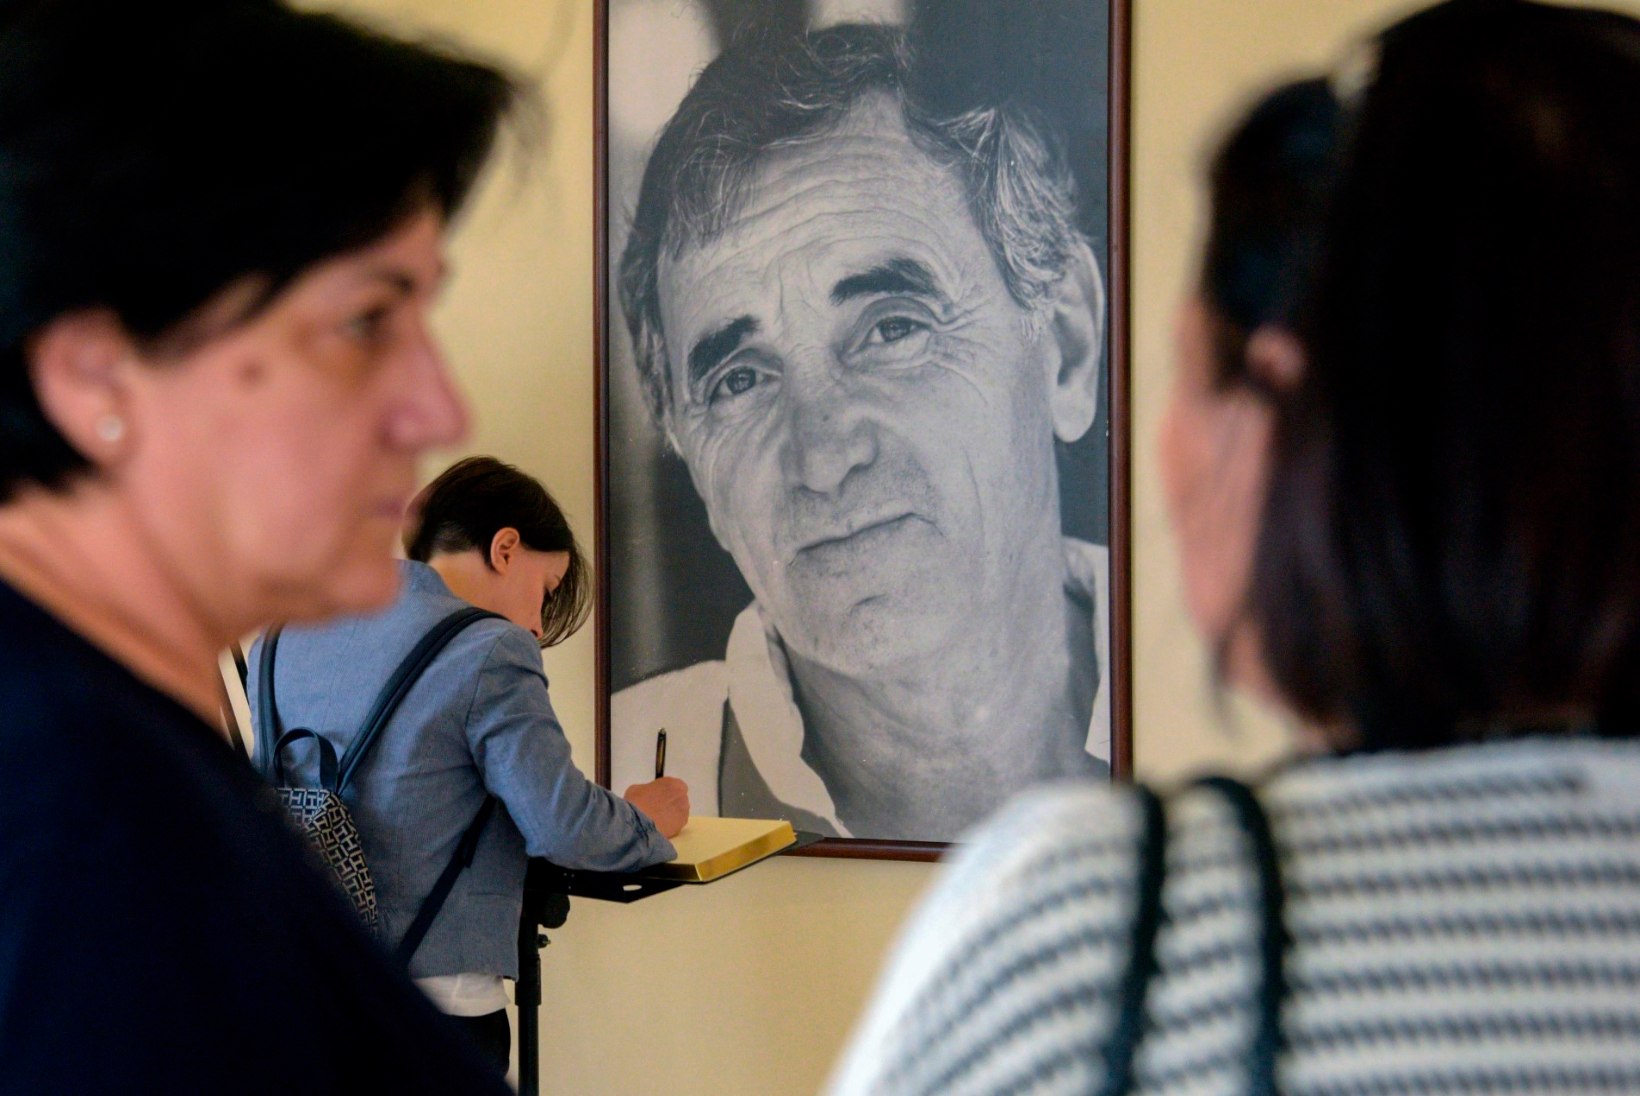 Prantsuse estraadilegend Charles Aznavour suri vannis